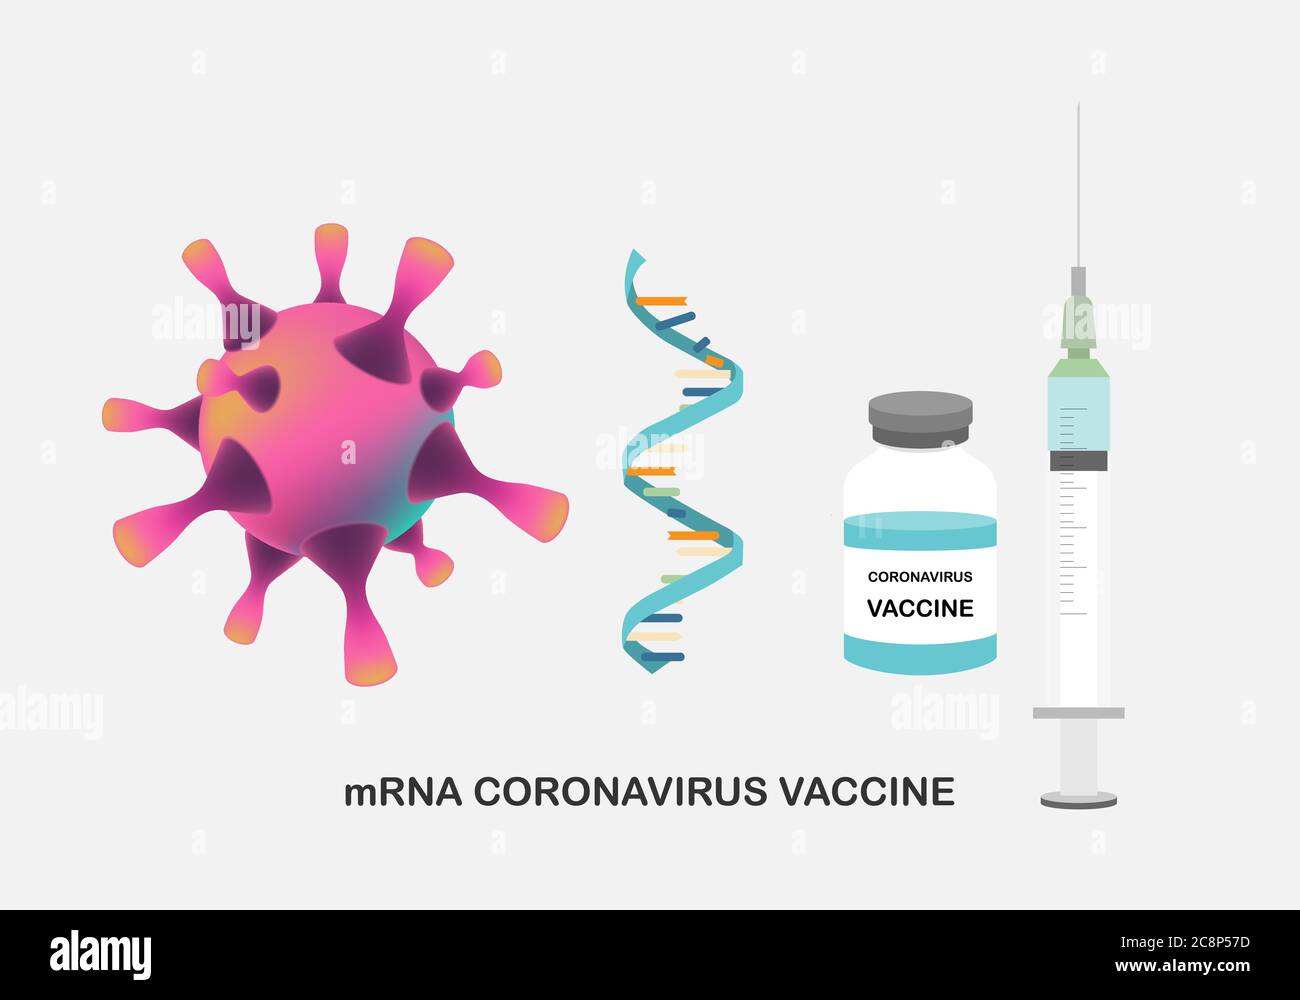 Concepts de vaccin ARNm pour la protection du coronavirus. Illustration de l'ARNm, d'une seringue avec aiguille et d'un flacon de vaccin pour la vaccination contre le corona Illustration de Vecteur